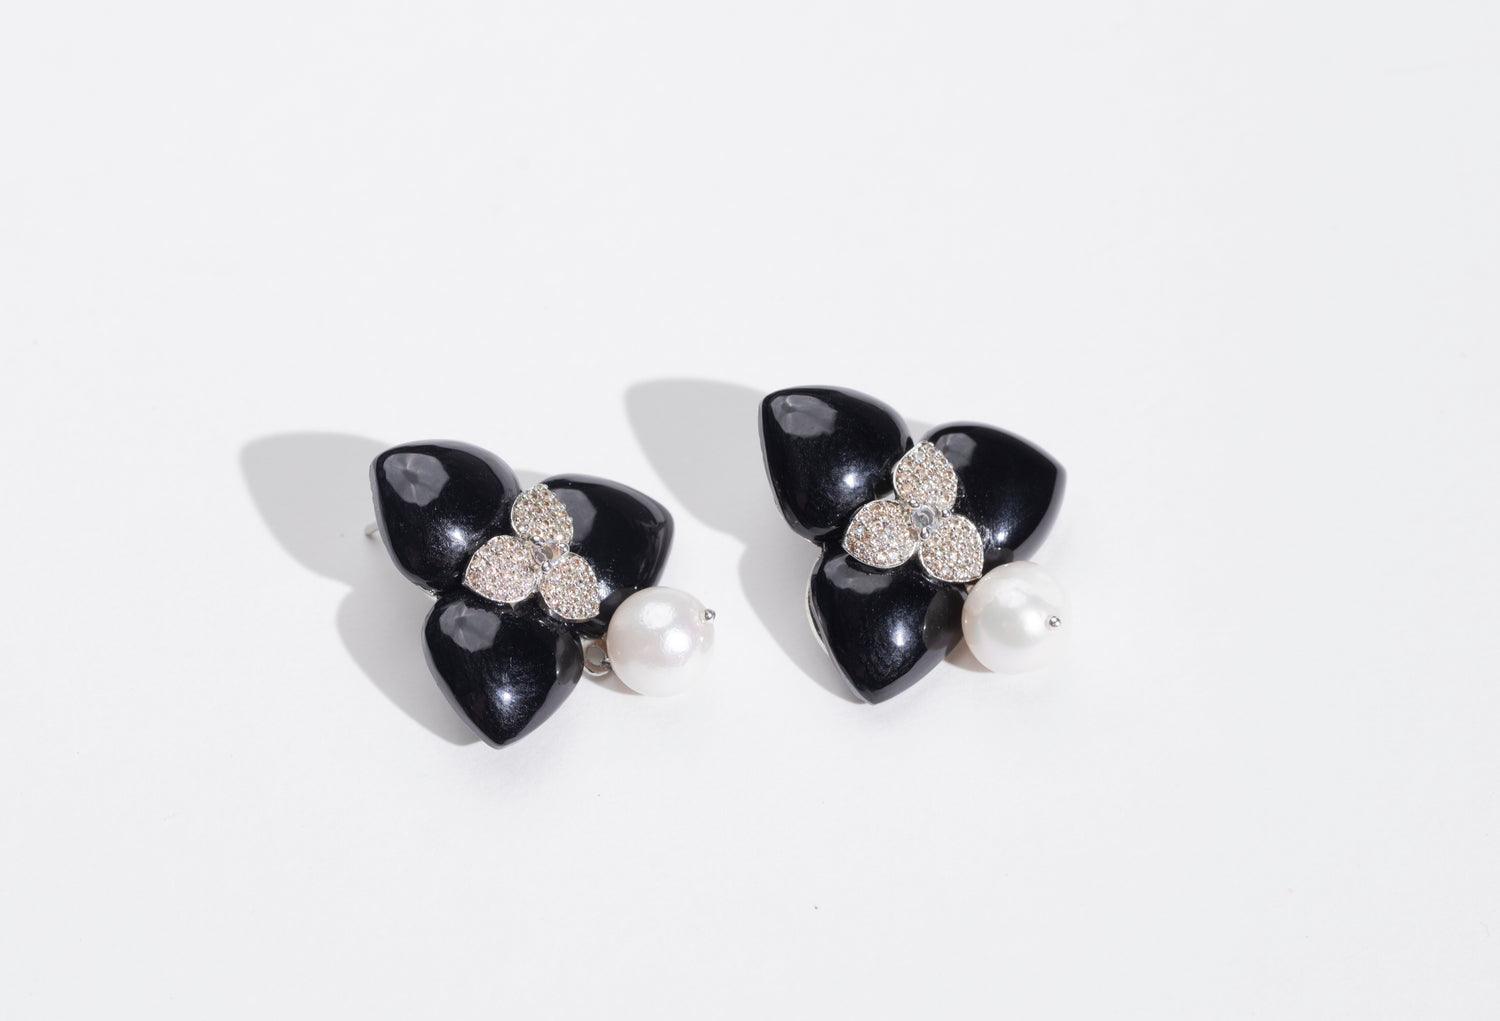 Timeless Elegance: Black Stone Earrings & Pendant Set